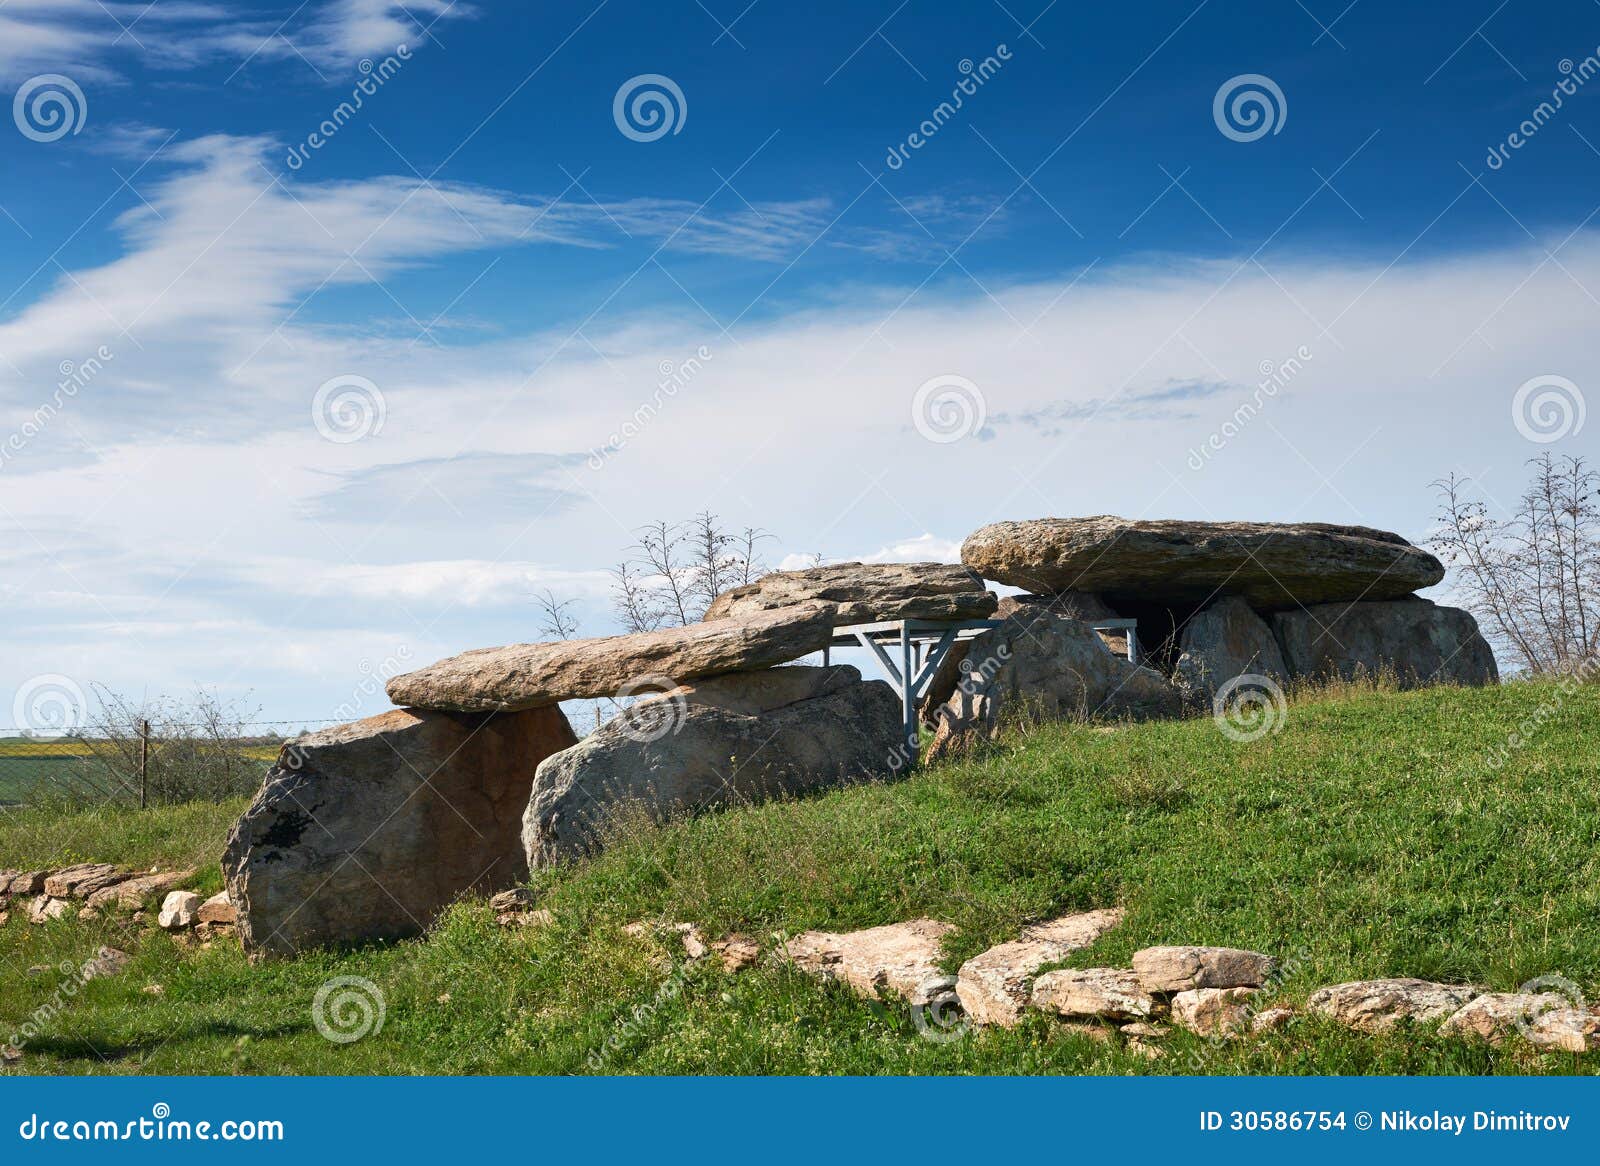 thracian dolmen near edirne, turkey